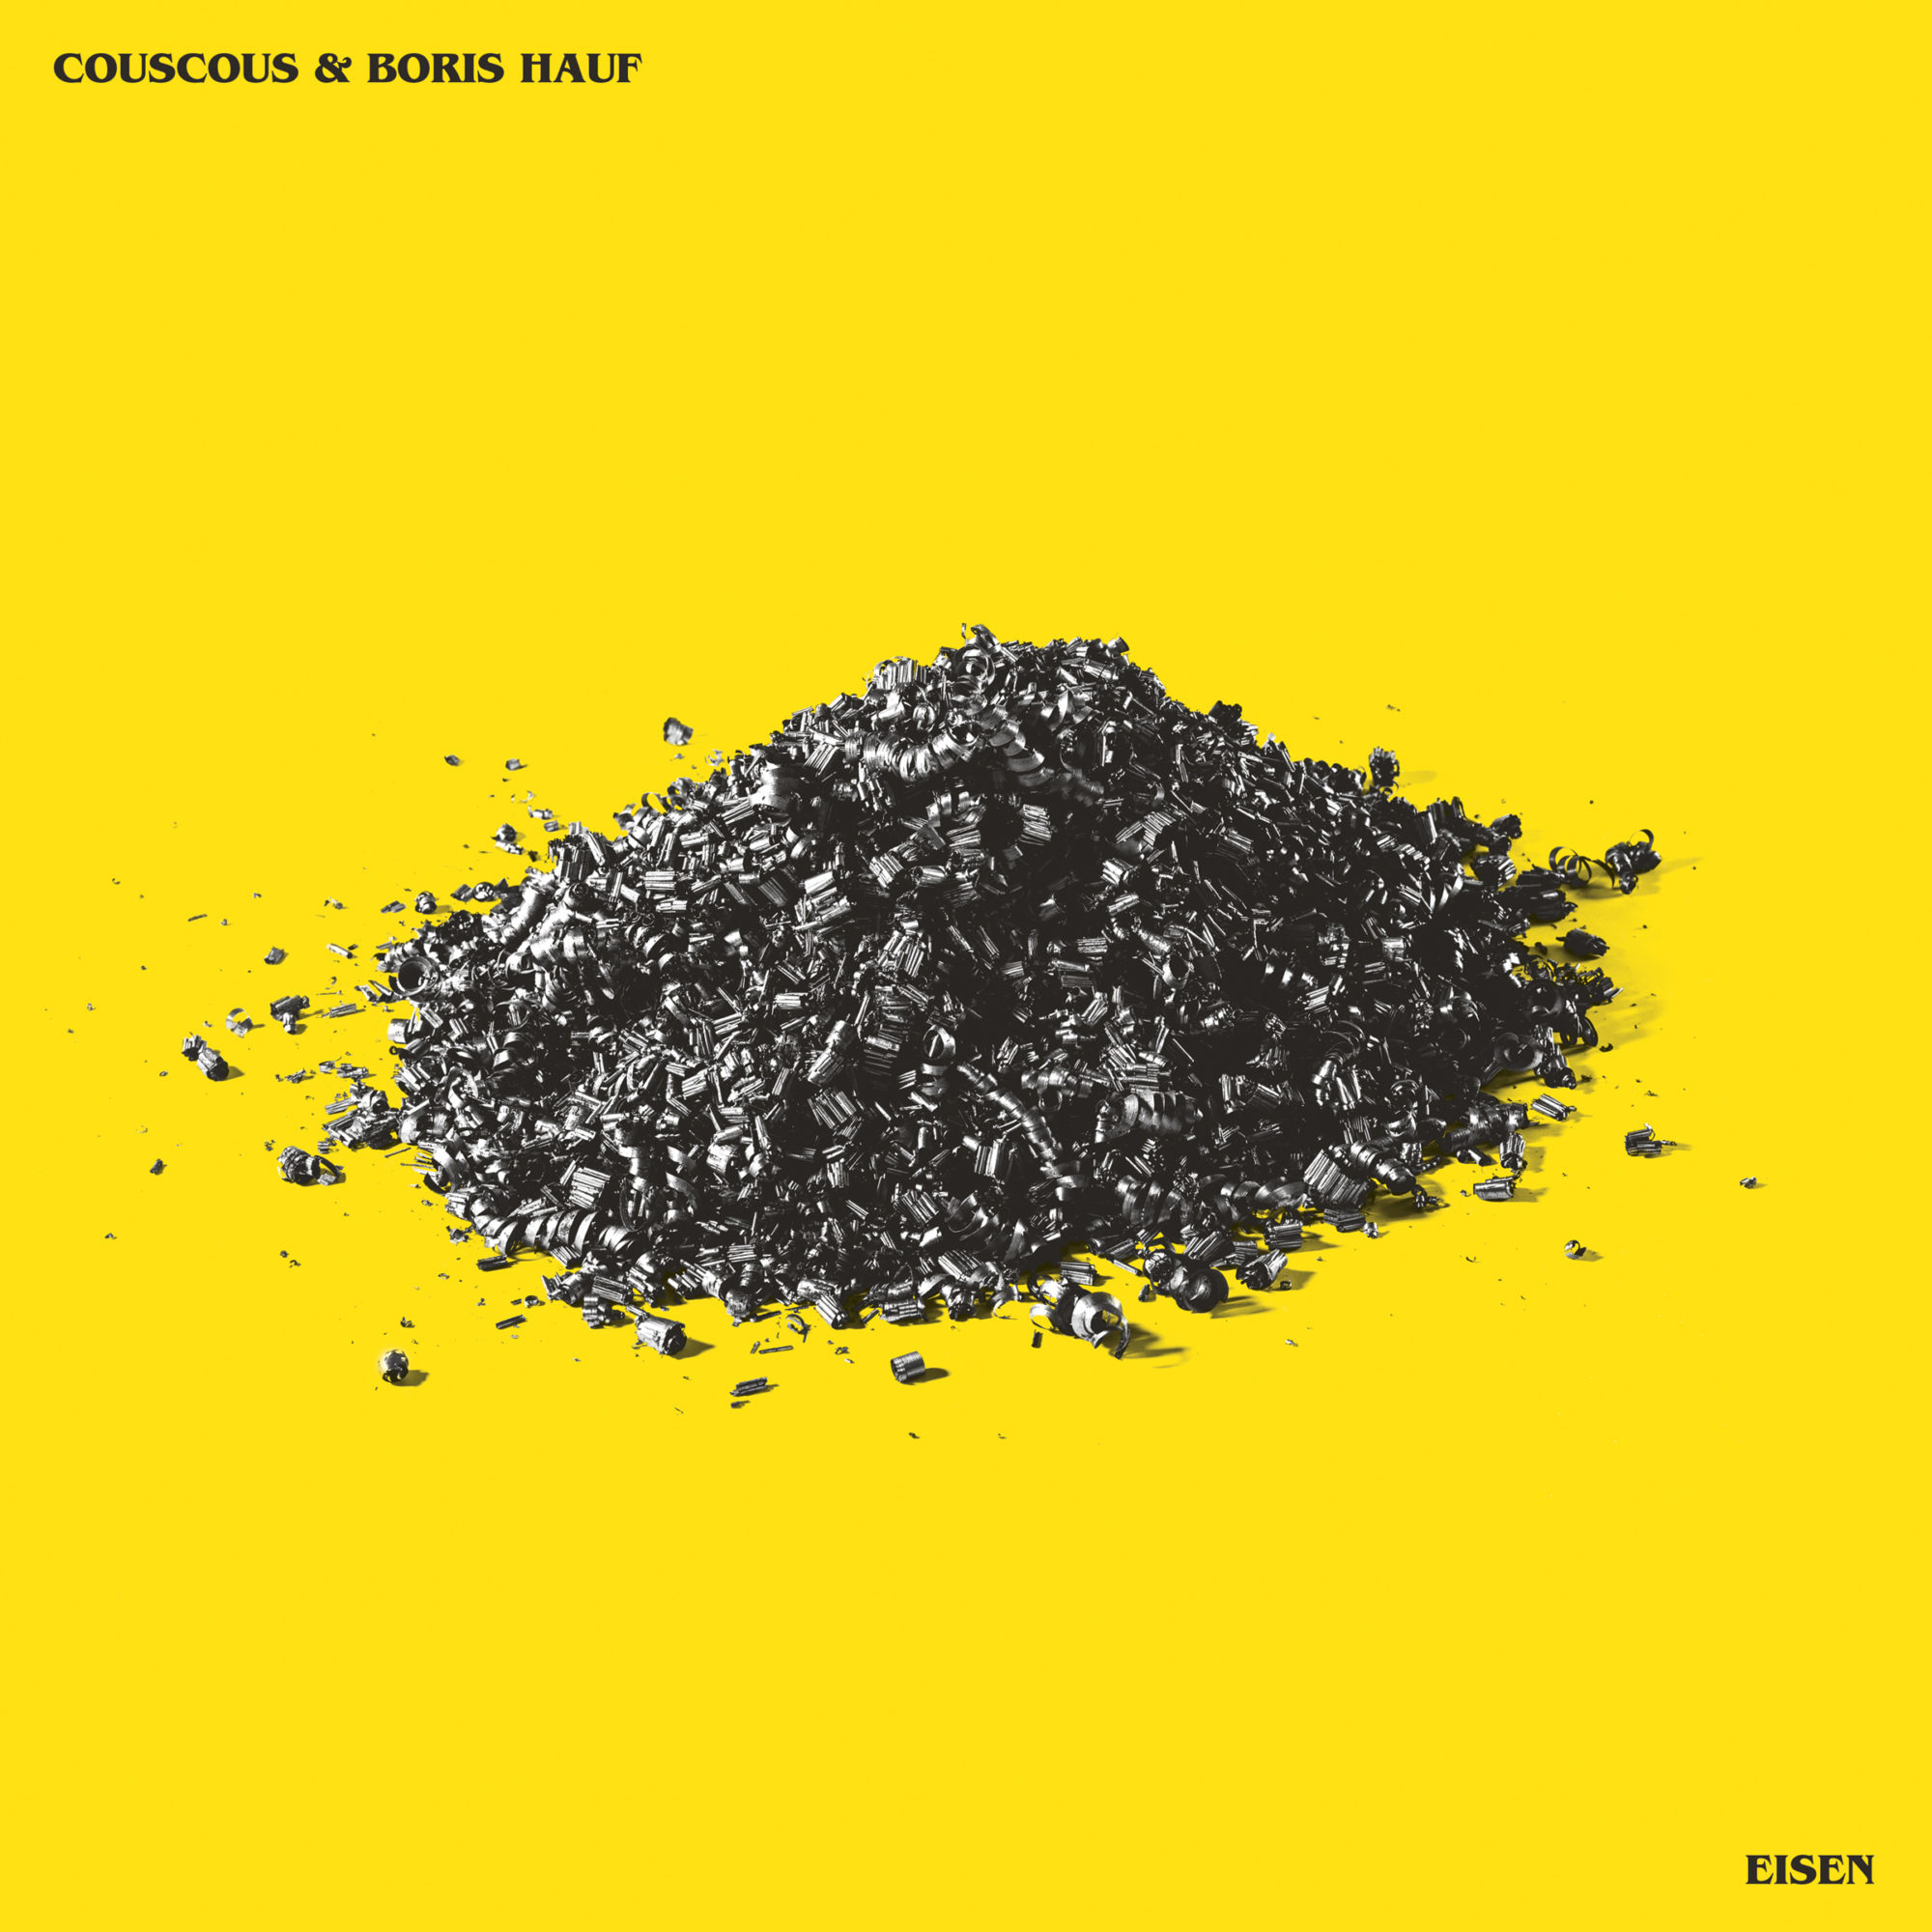 Couscous Band Boris Hauf Artist Eisen Album Vinyl Cover Music Austria